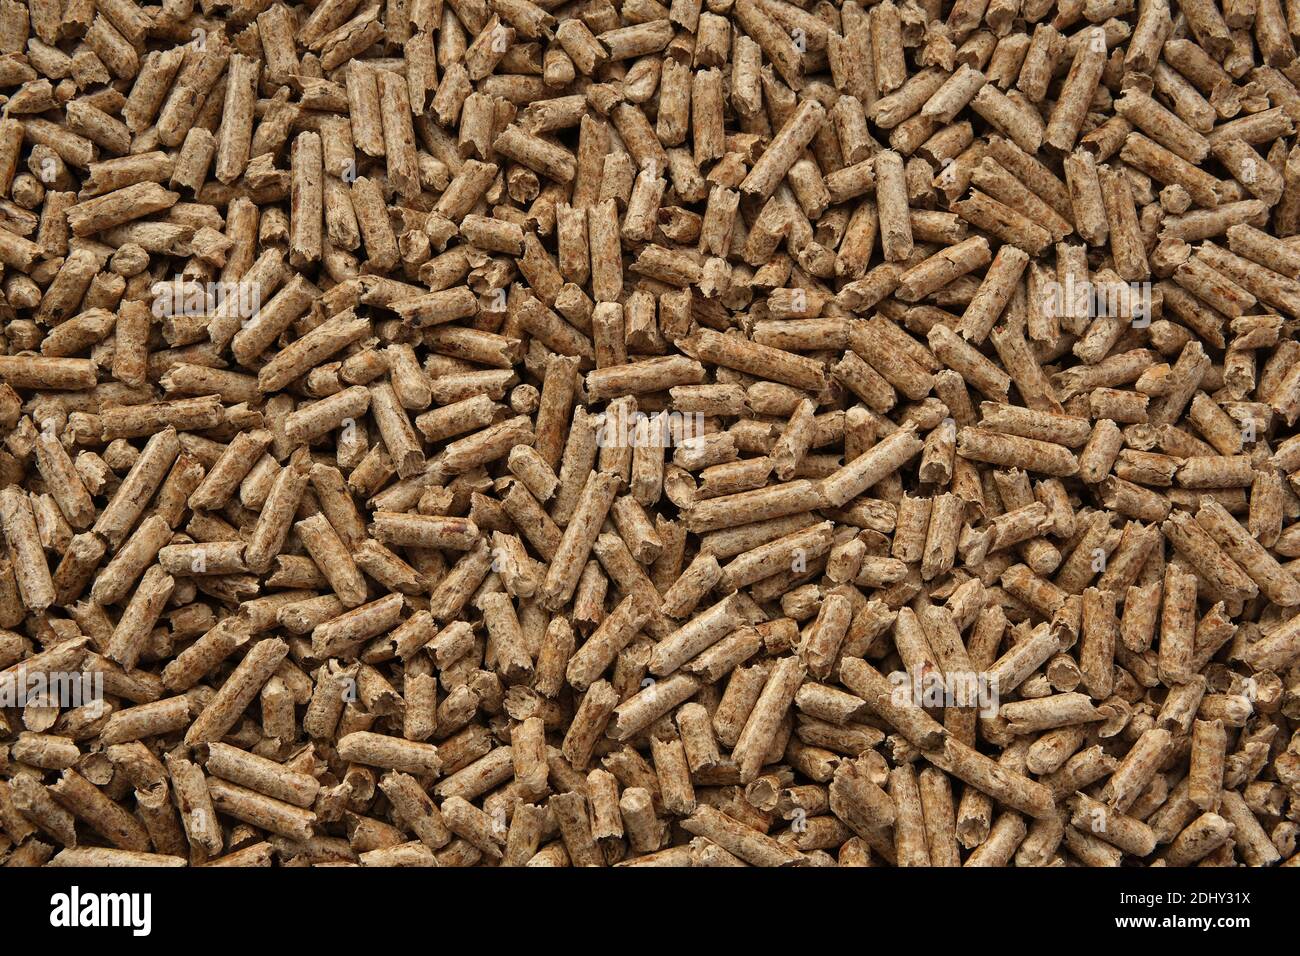 Texture des granulés de bois. Granulés de bois comprimés utilisés comme litière naturelle pour chats. Matériau écologique et biodégradable. Image de Flat lay. Banque D'Images